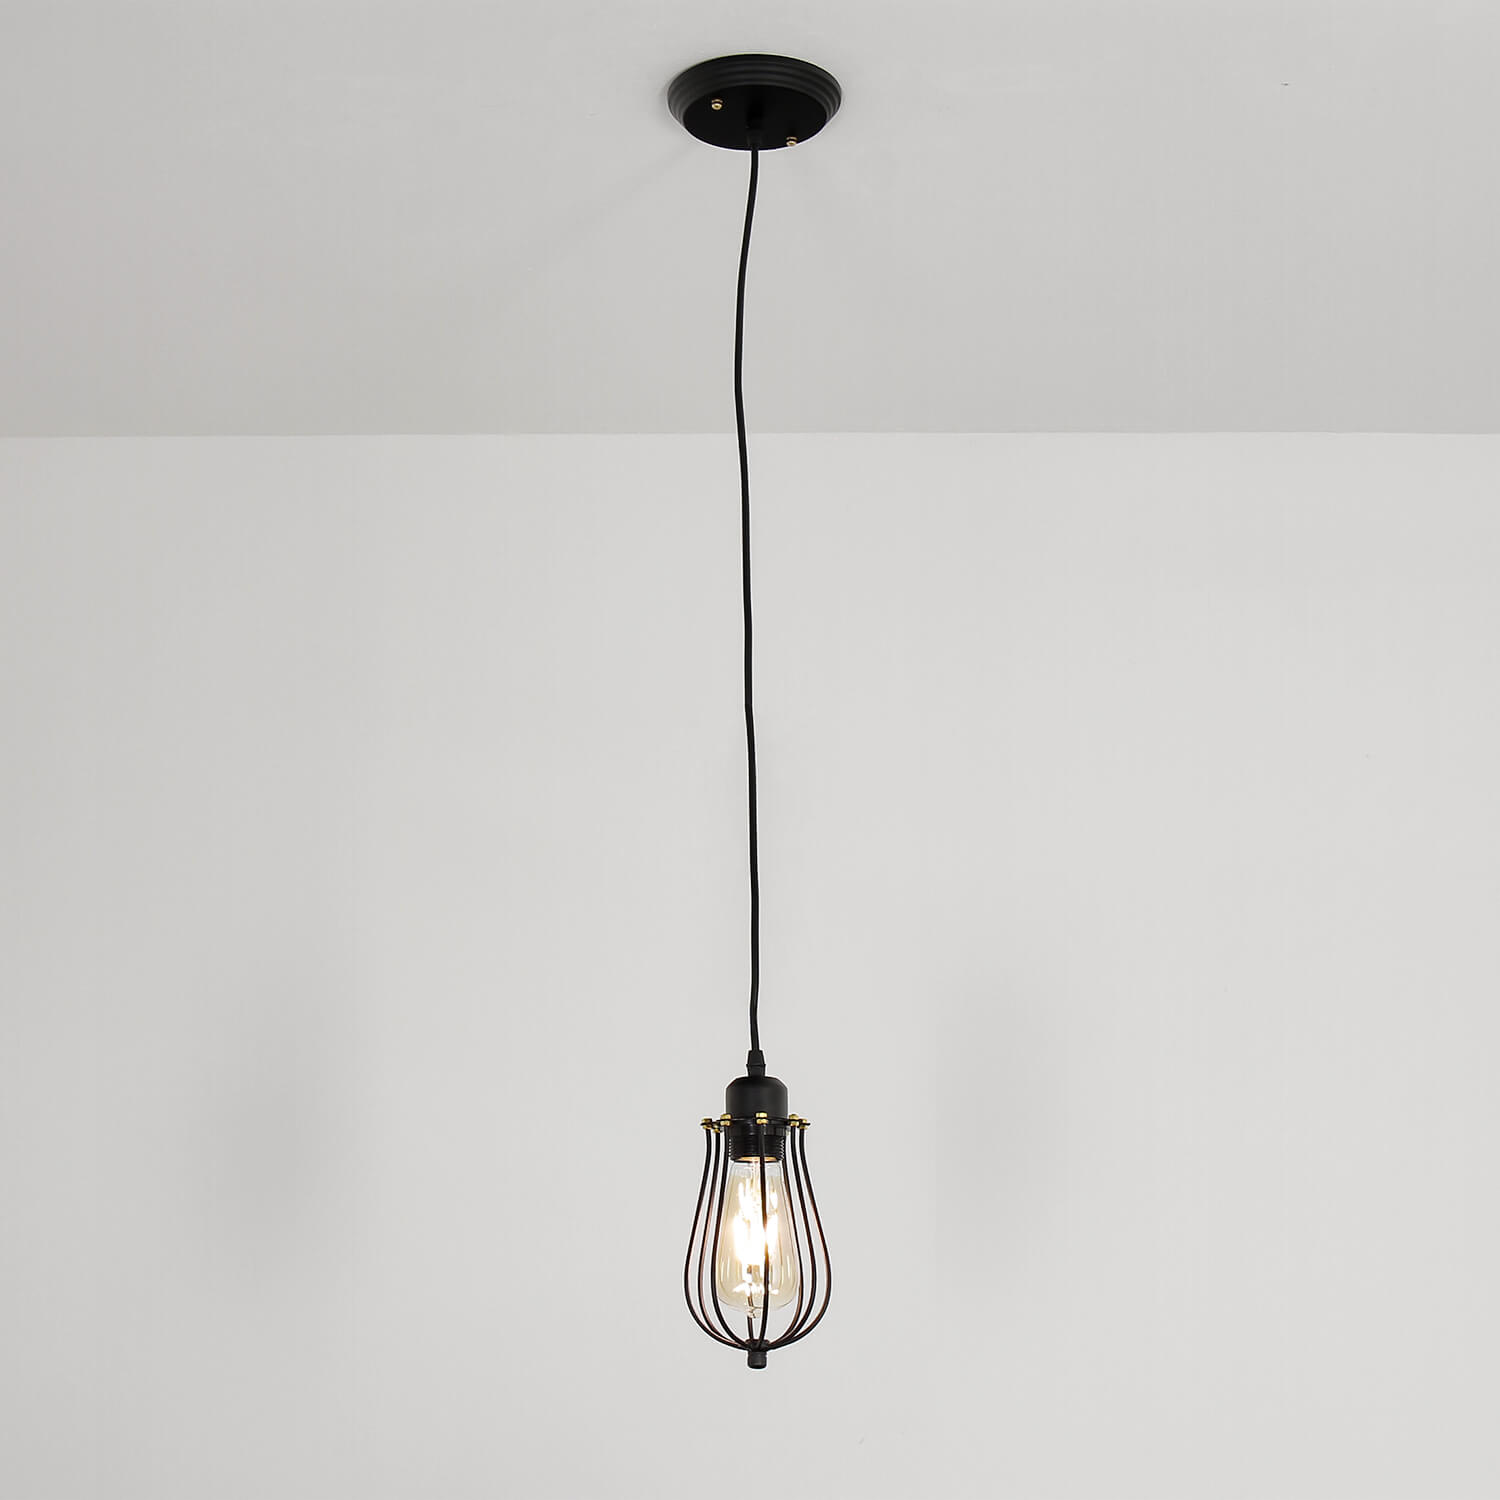 Hängelampe Industrie Design mit Edison Lampe Esszimmer